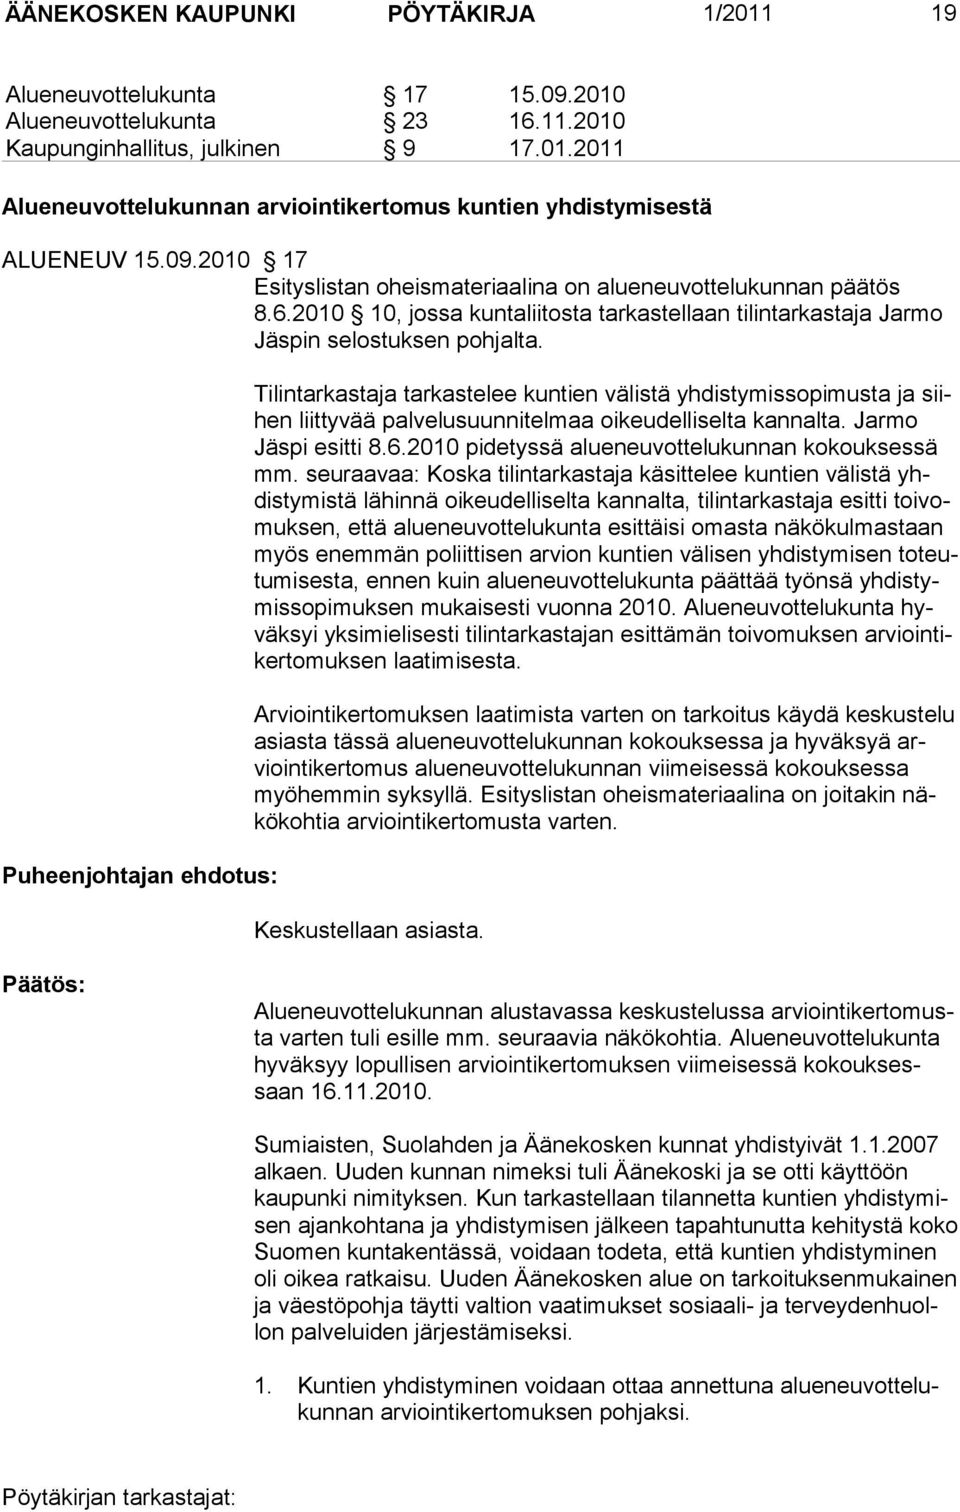 Puheenjohtajan ehdotus: Tilintarkastaja tarkastelee kuntien välistä yhdistymissopimusta ja siihen liittyvää palvelusuunnitelmaa oikeudelliselta kannalta. Jarmo Jäspi esitti 8.6.